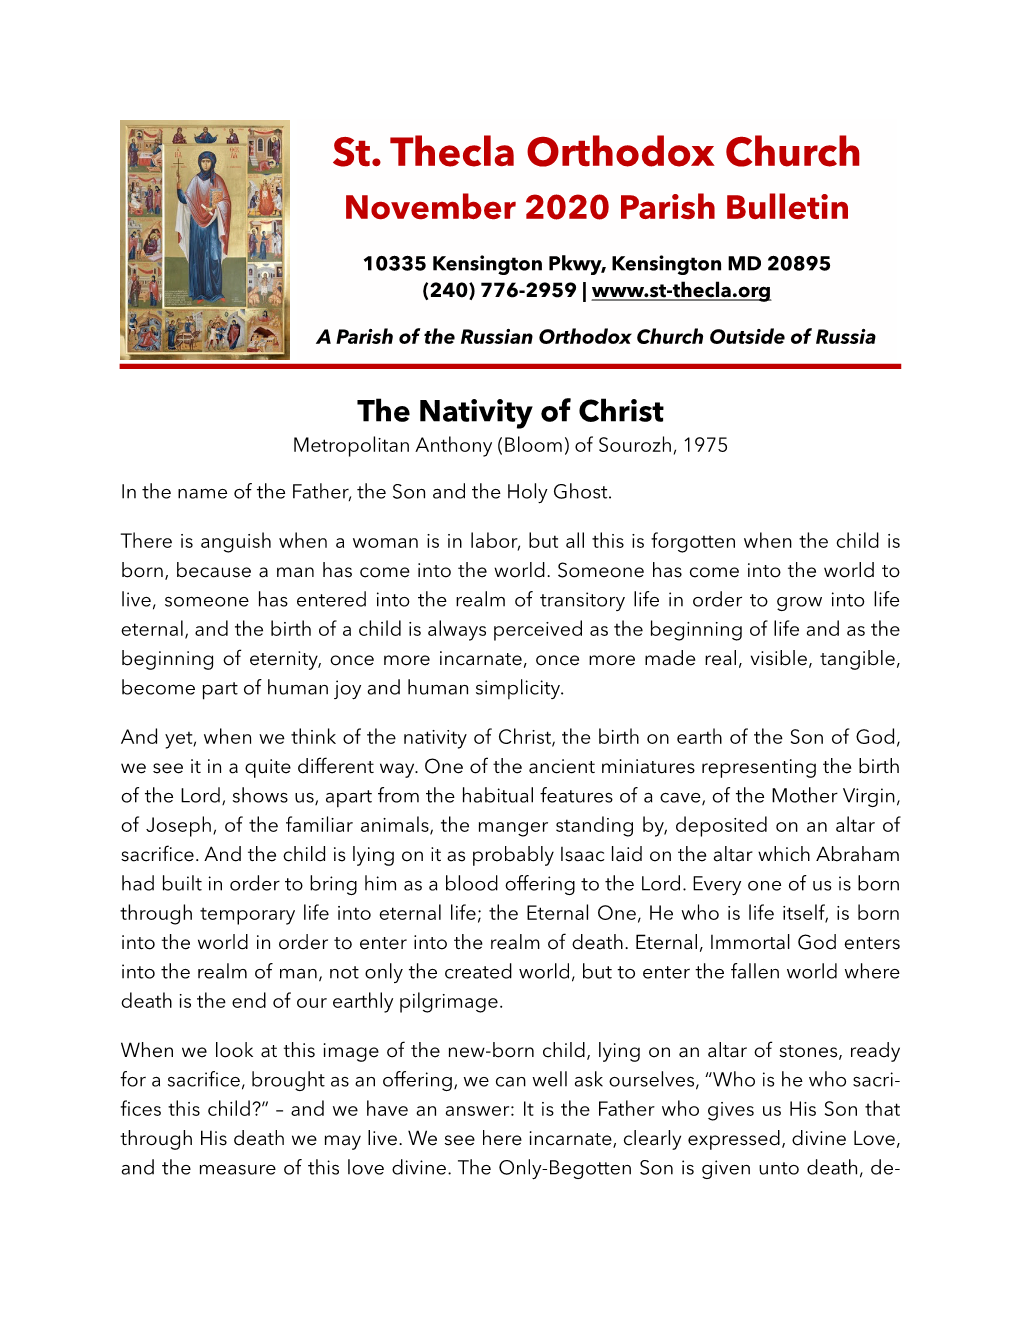 St. Thecla Parish Bulletin